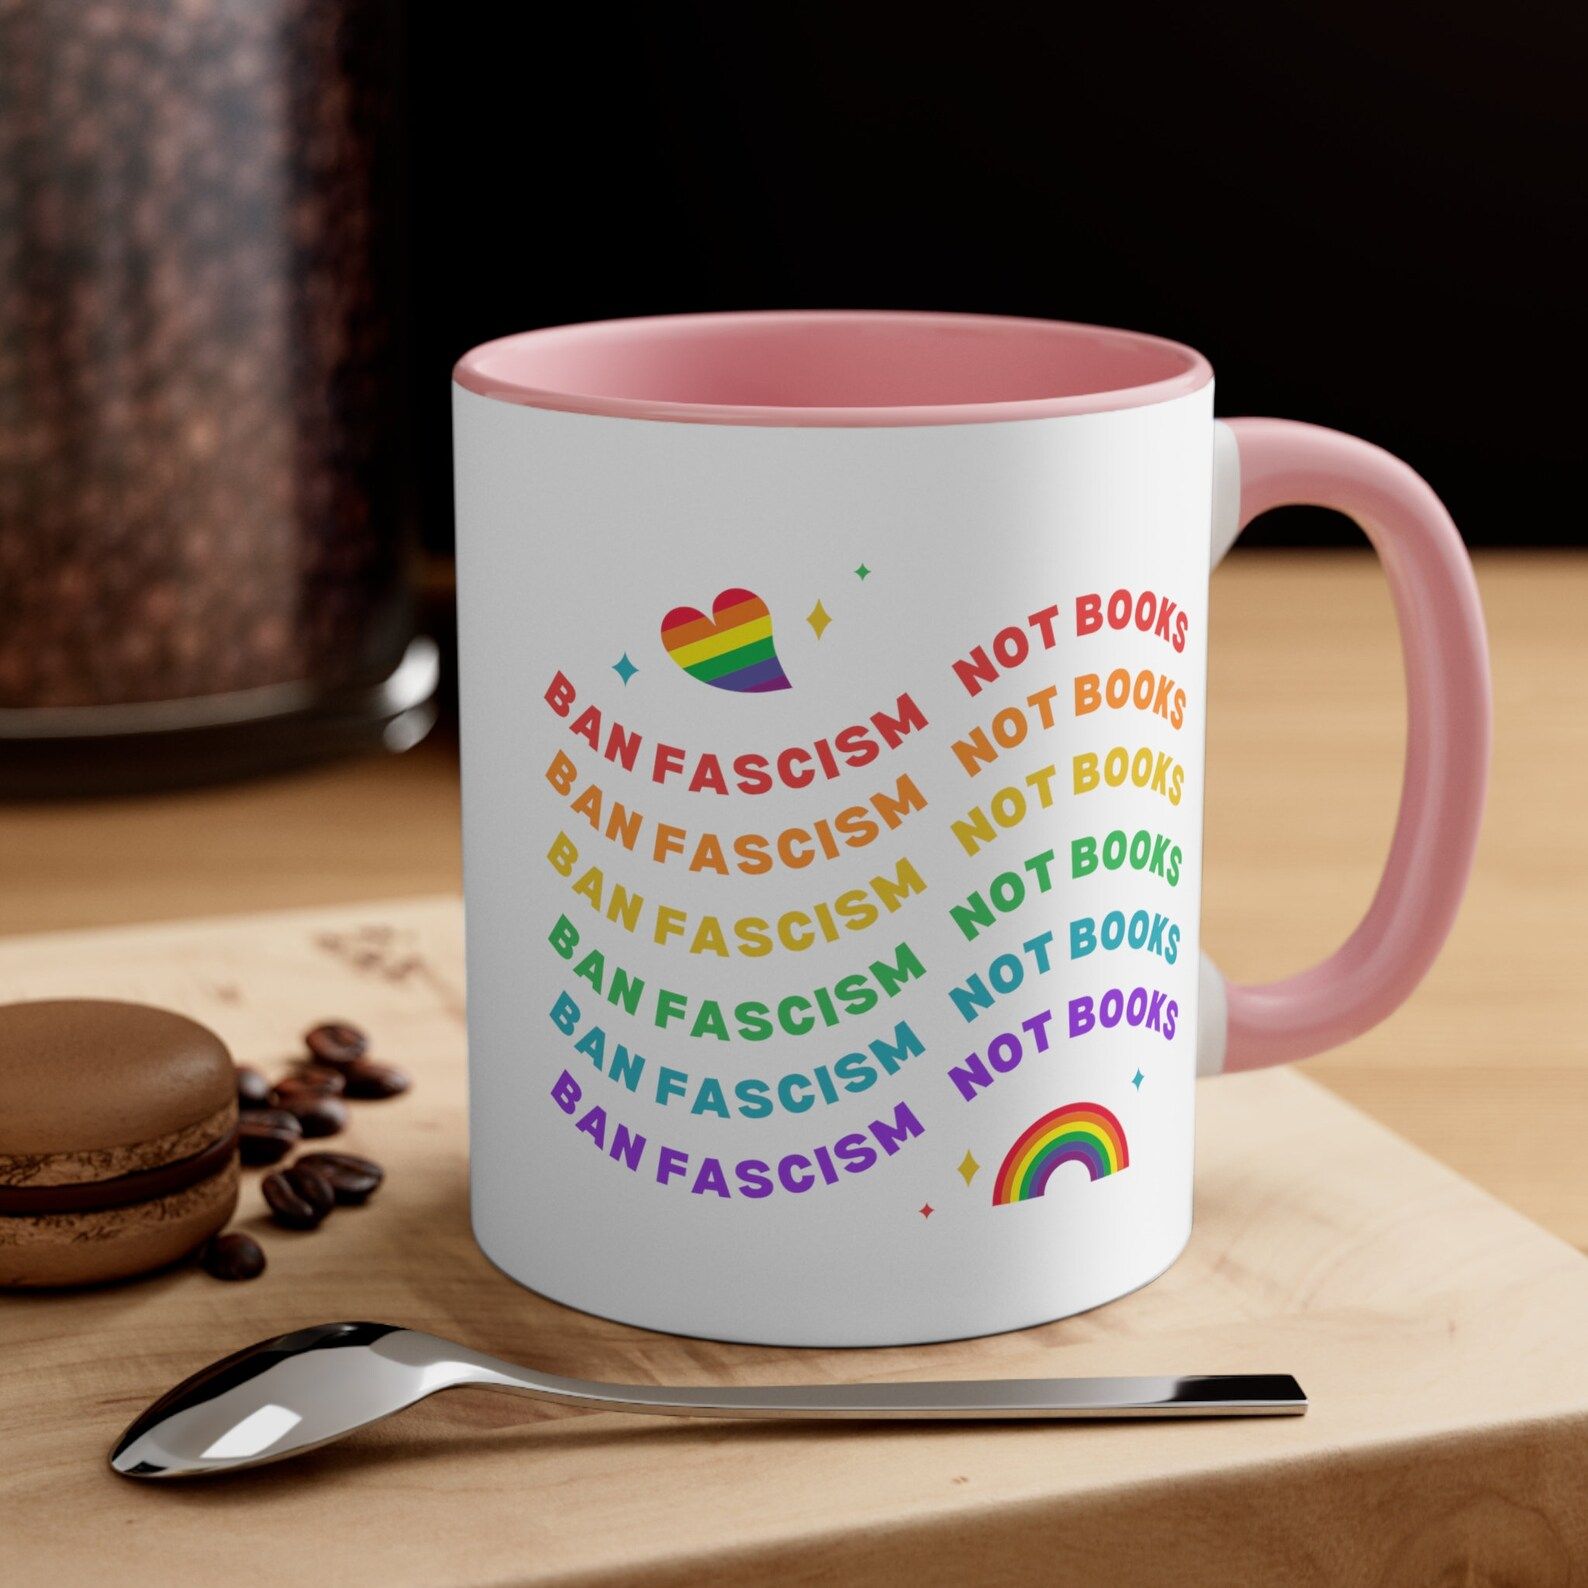 mug that says "ban fascism, not books."